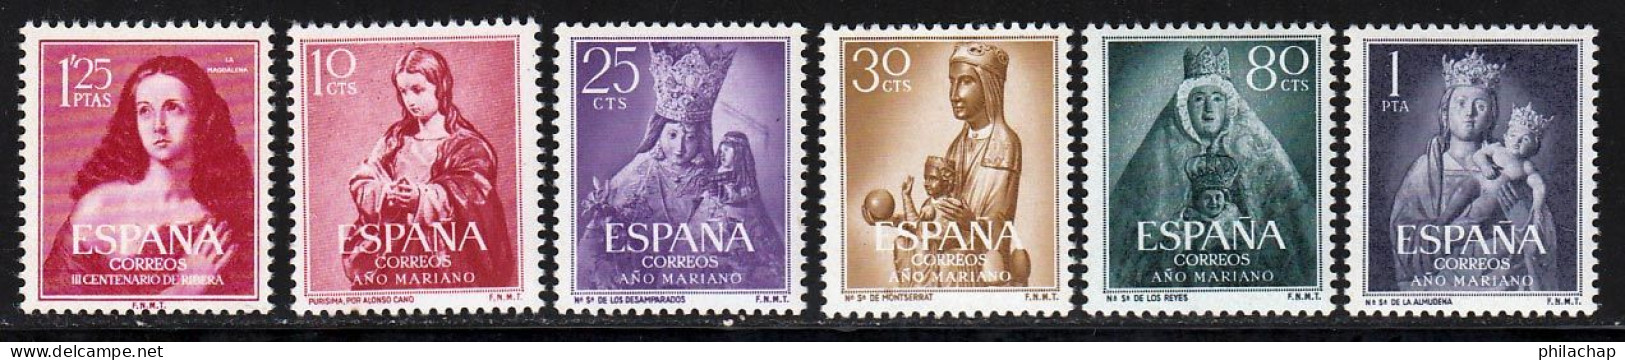 Espagne 1954 Yvert 840 - 843 - 845 - 846 - 849 - 850 ** TB - Unused Stamps